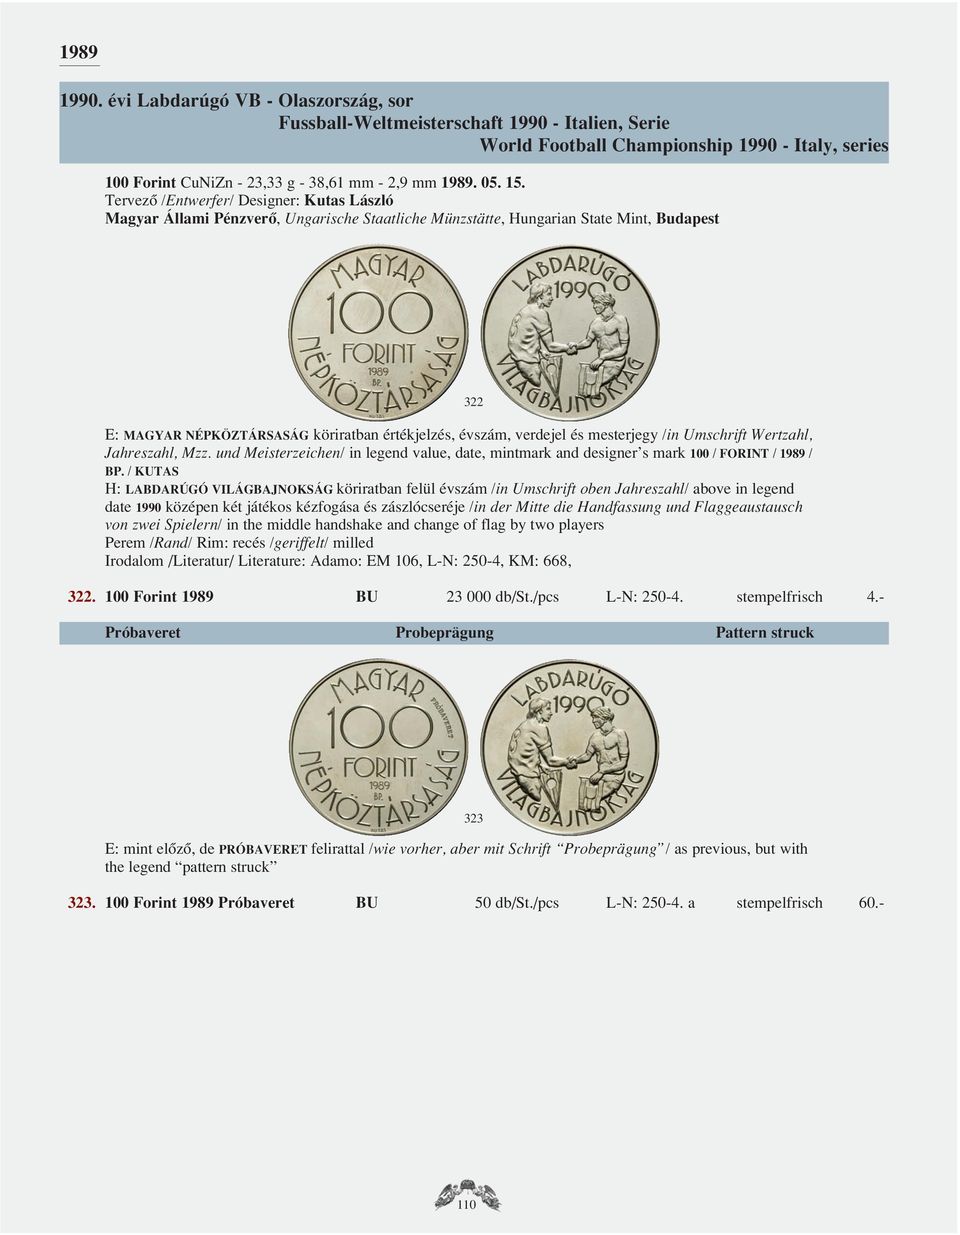 und Meisterzeichen/ in legend value, date, mintmark and designer s mark 100 / FORINT / 1989 / BP.